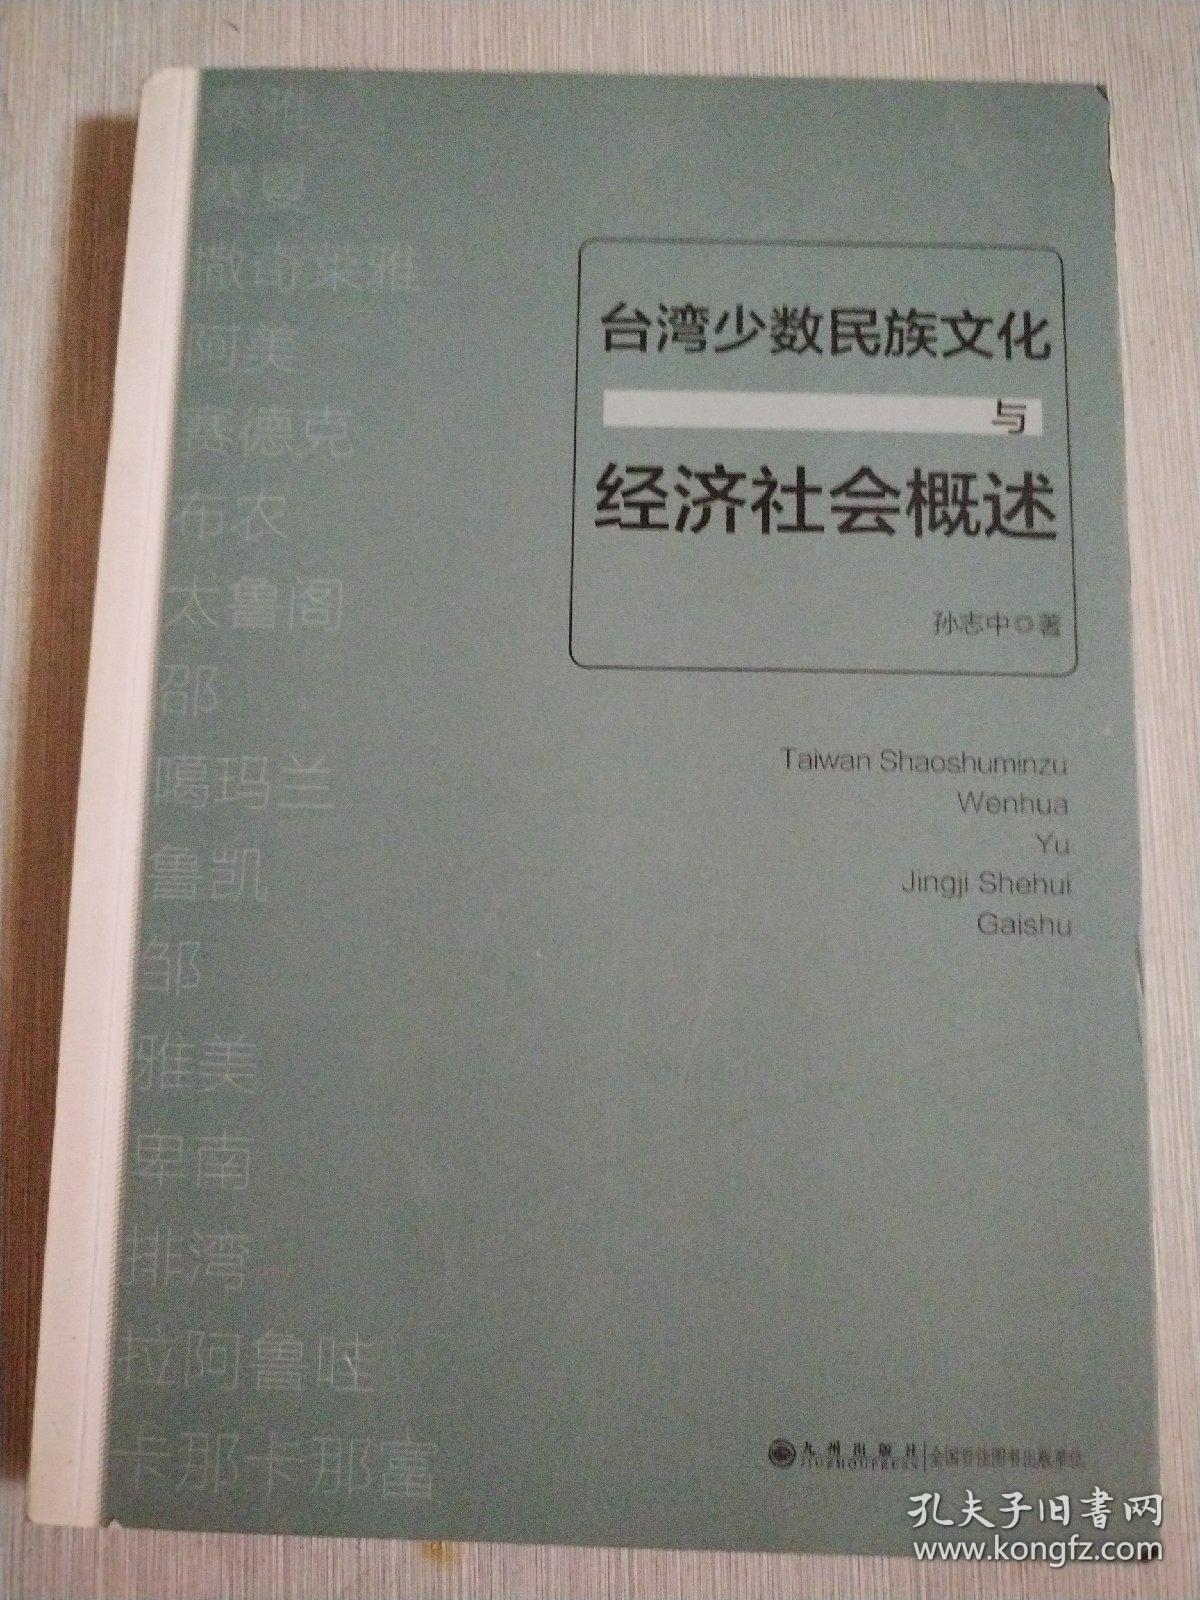 台湾少数民族文化与经济社会概述